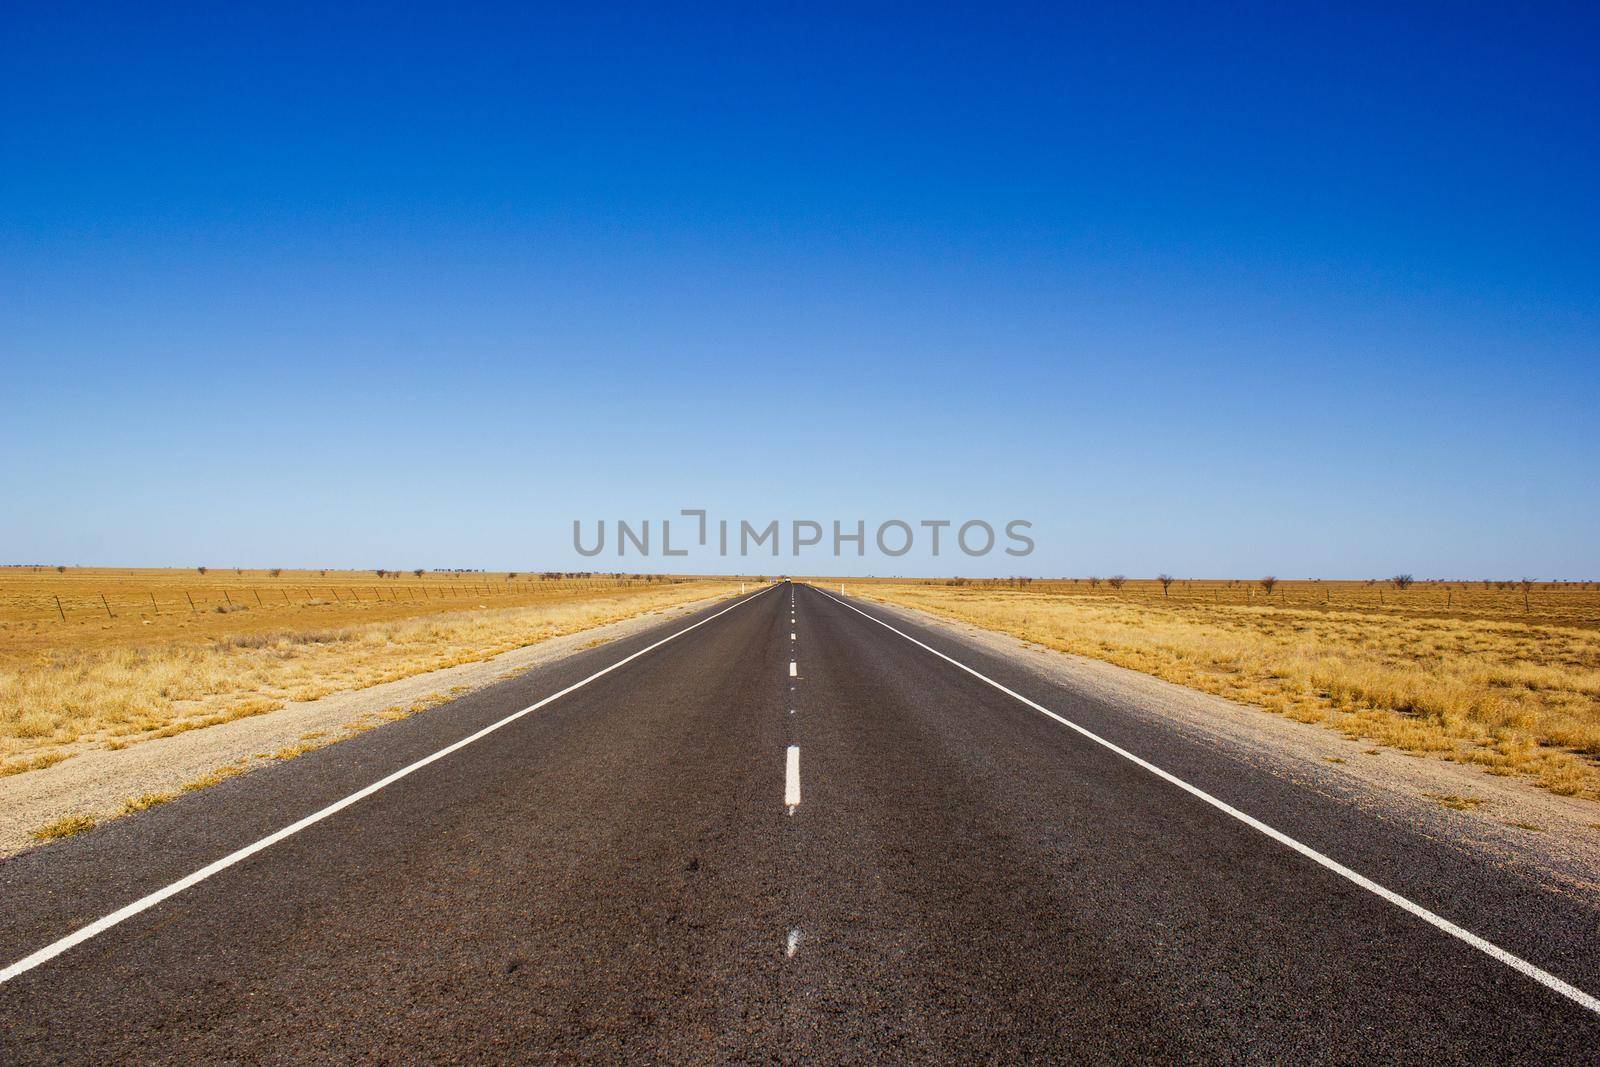 Straße ins Nichts im australischen Outback by bettercallcurry